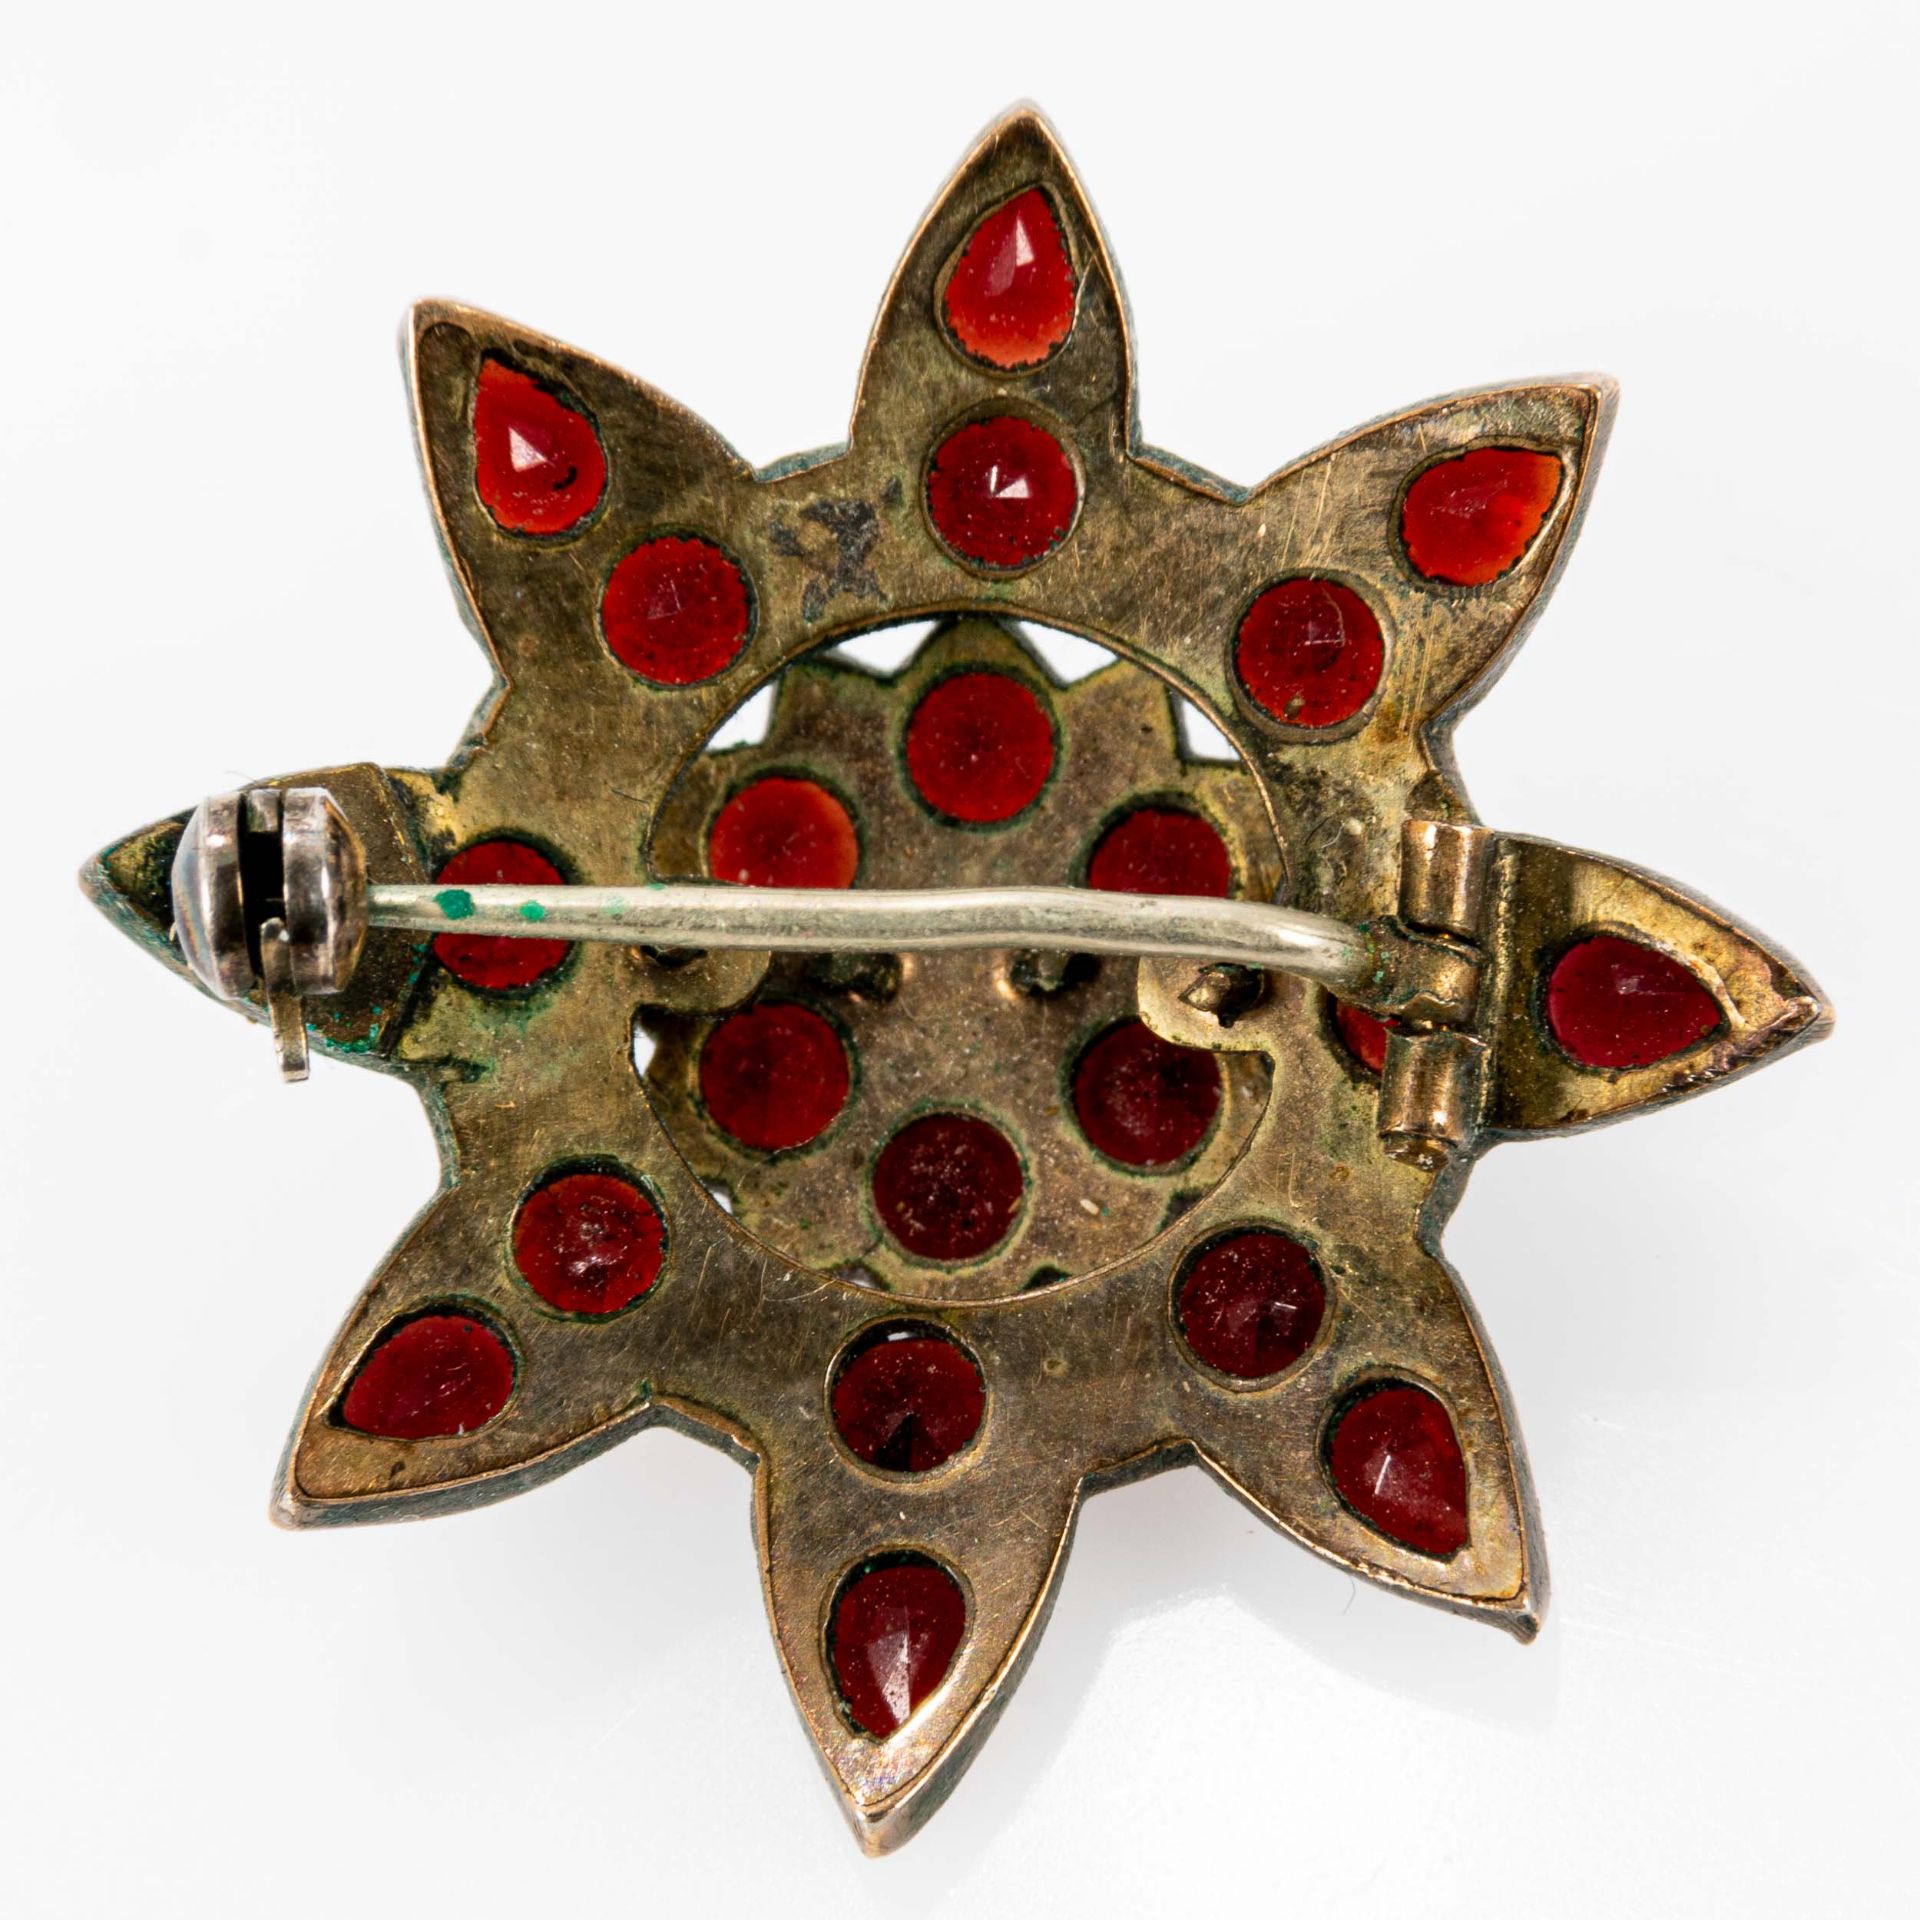 2teiliges Granatschmuck-Set, bestehend aus prachtvollem Glieder-Collier und sternförmiger Brosche, - Image 6 of 7